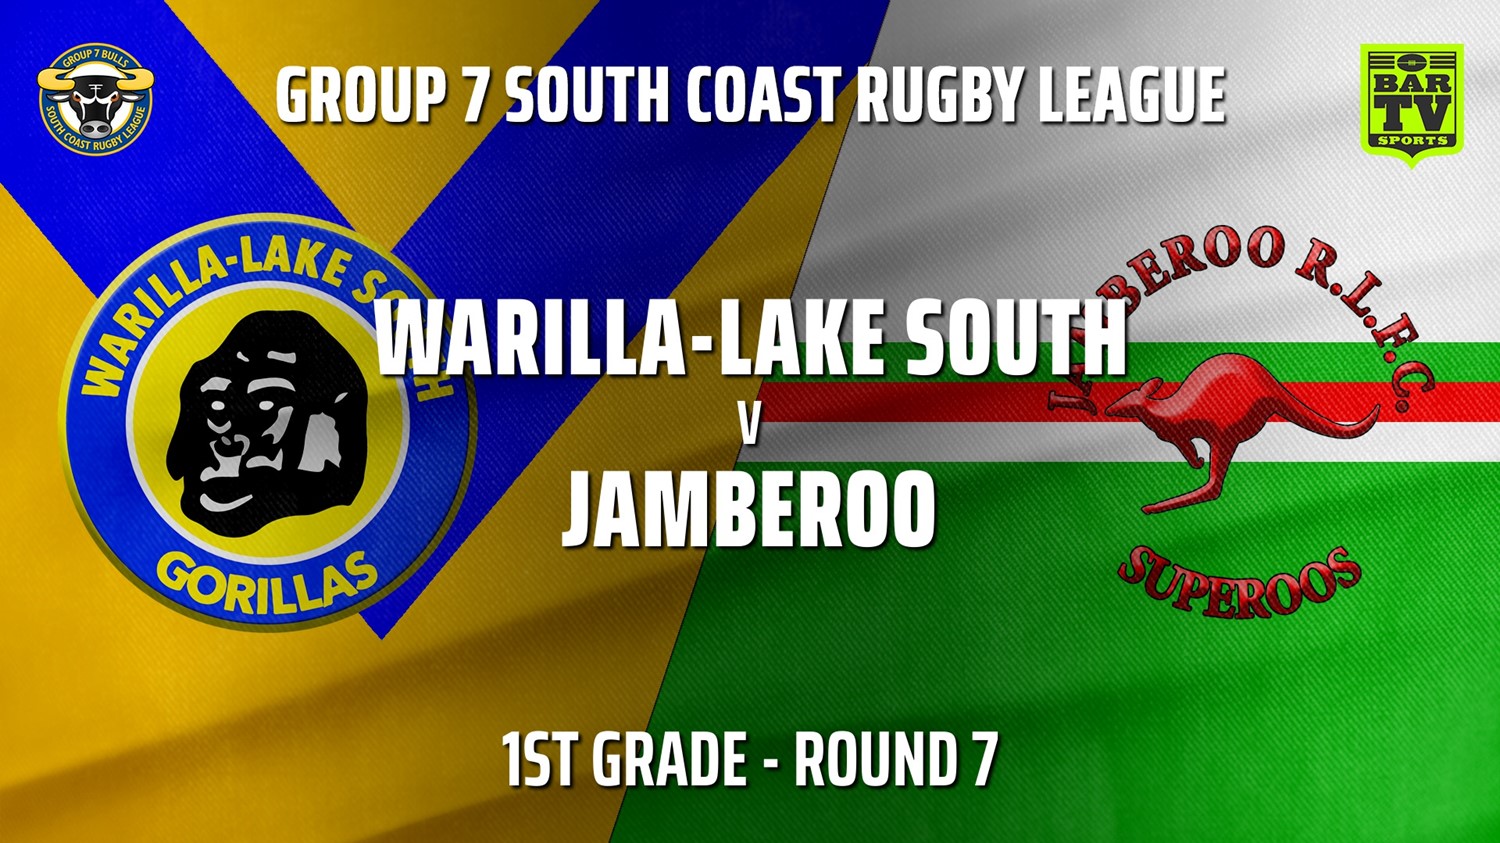 210530-Group 7 RL Round 7 - 1st Grade - Warilla-Lake South v Jamberoo Minigame Slate Image